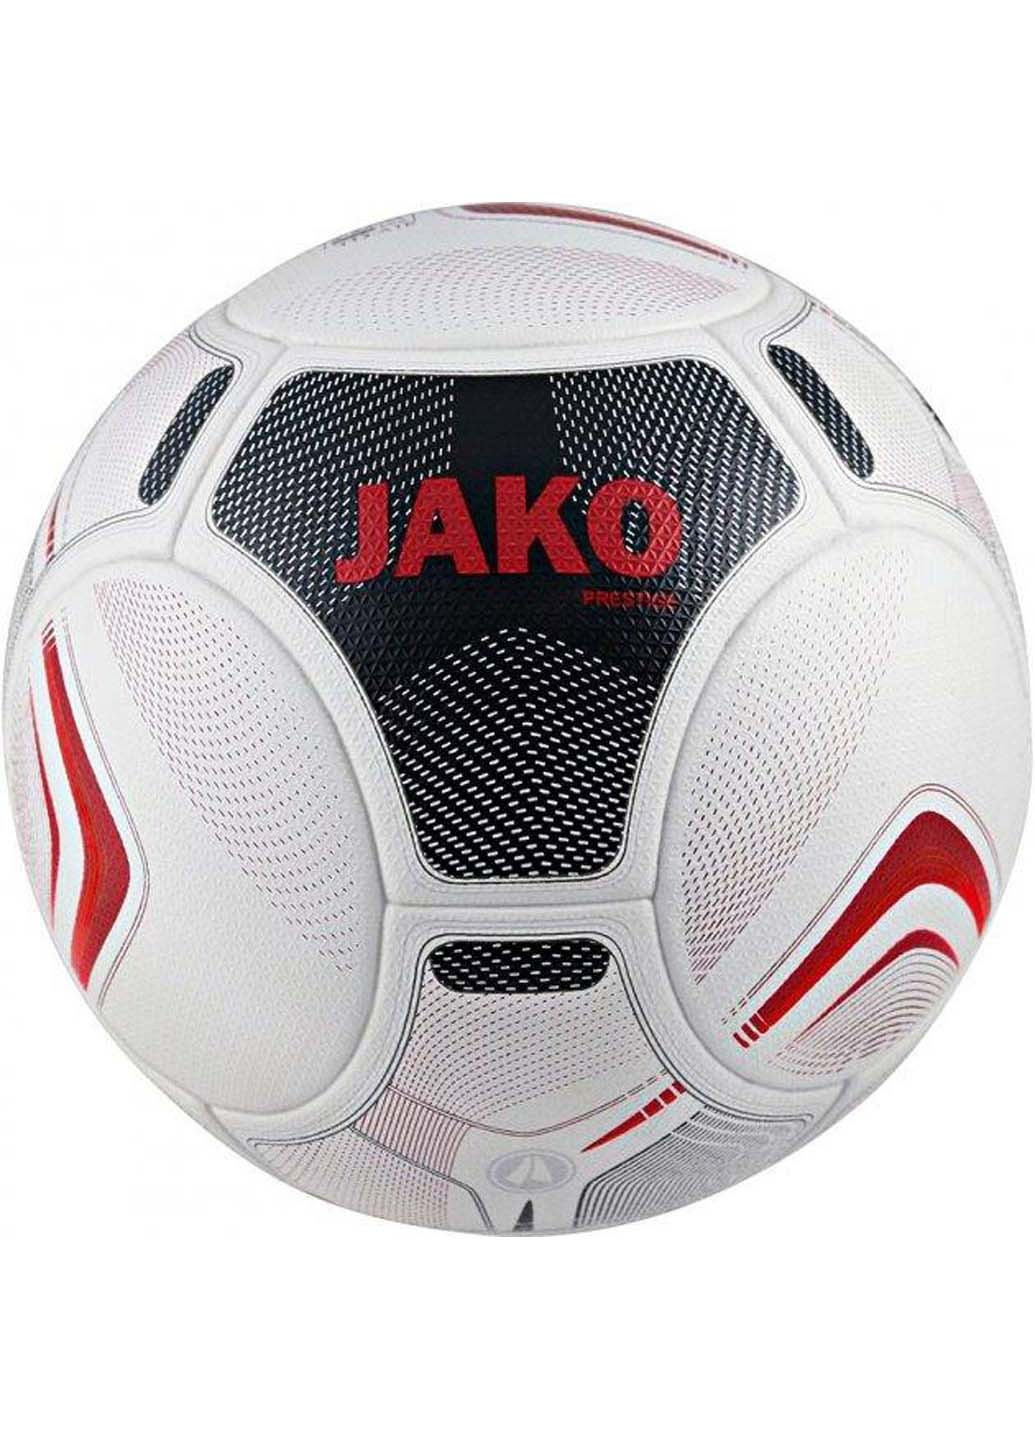 М'яч футбольний Fifa Prestige Qulity Pro Уні 5 Jako (257606982)